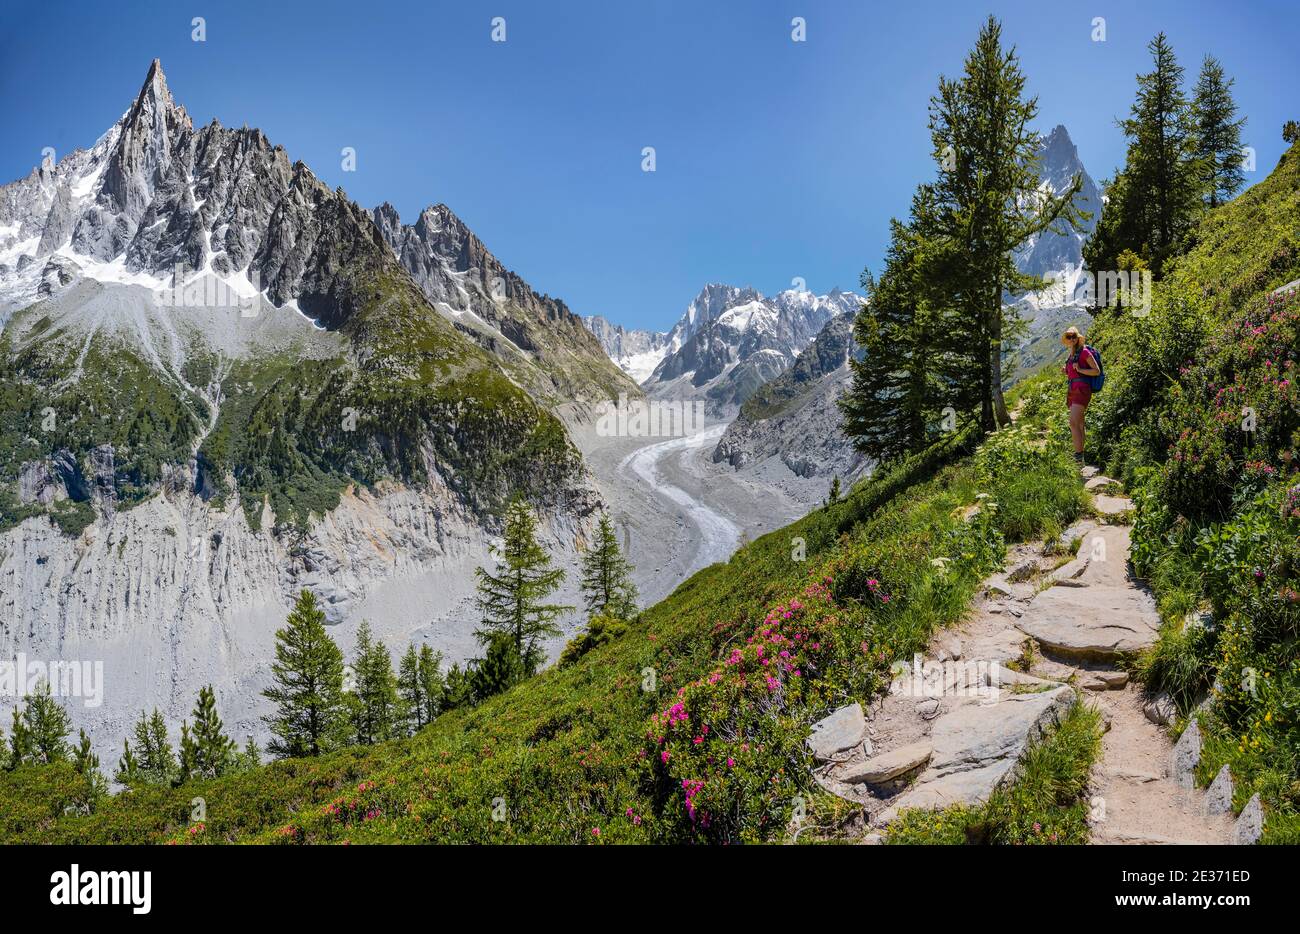 Alpinista sul sentiero escursionistico, Grand Balcon Nord, lingua del ghiacciaio Mer de Glace, dietro Grandes Jorasses, massiccio del Monte Bianco, Chamonix, Francia Foto Stock